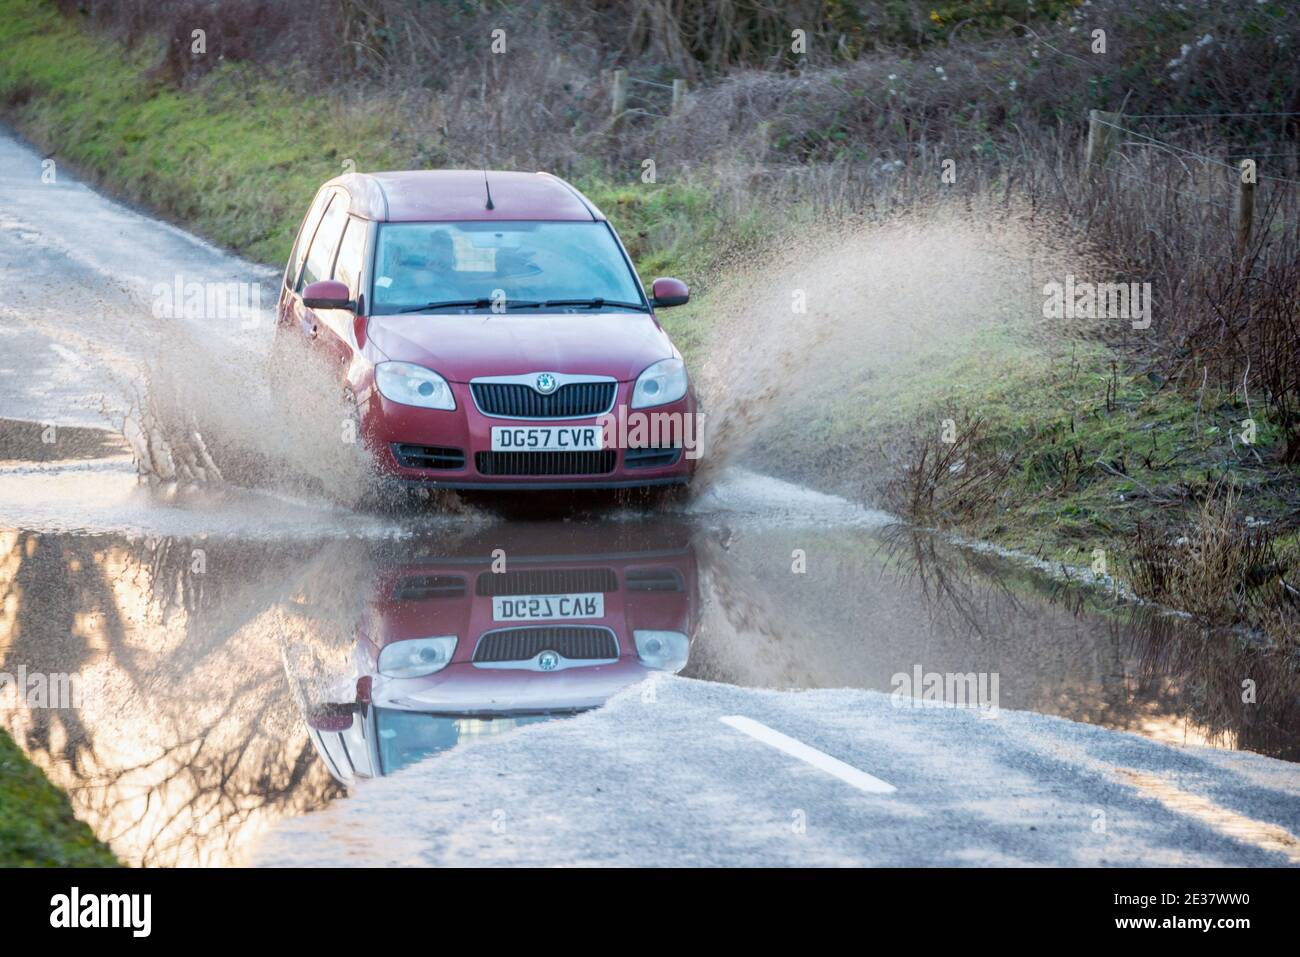 Brighton, 15 de enero de 2021: Un coche que pasa por una carretera inundada en la campiña de Sussex en Saddlescombe, cerca de Brighton Foto de stock